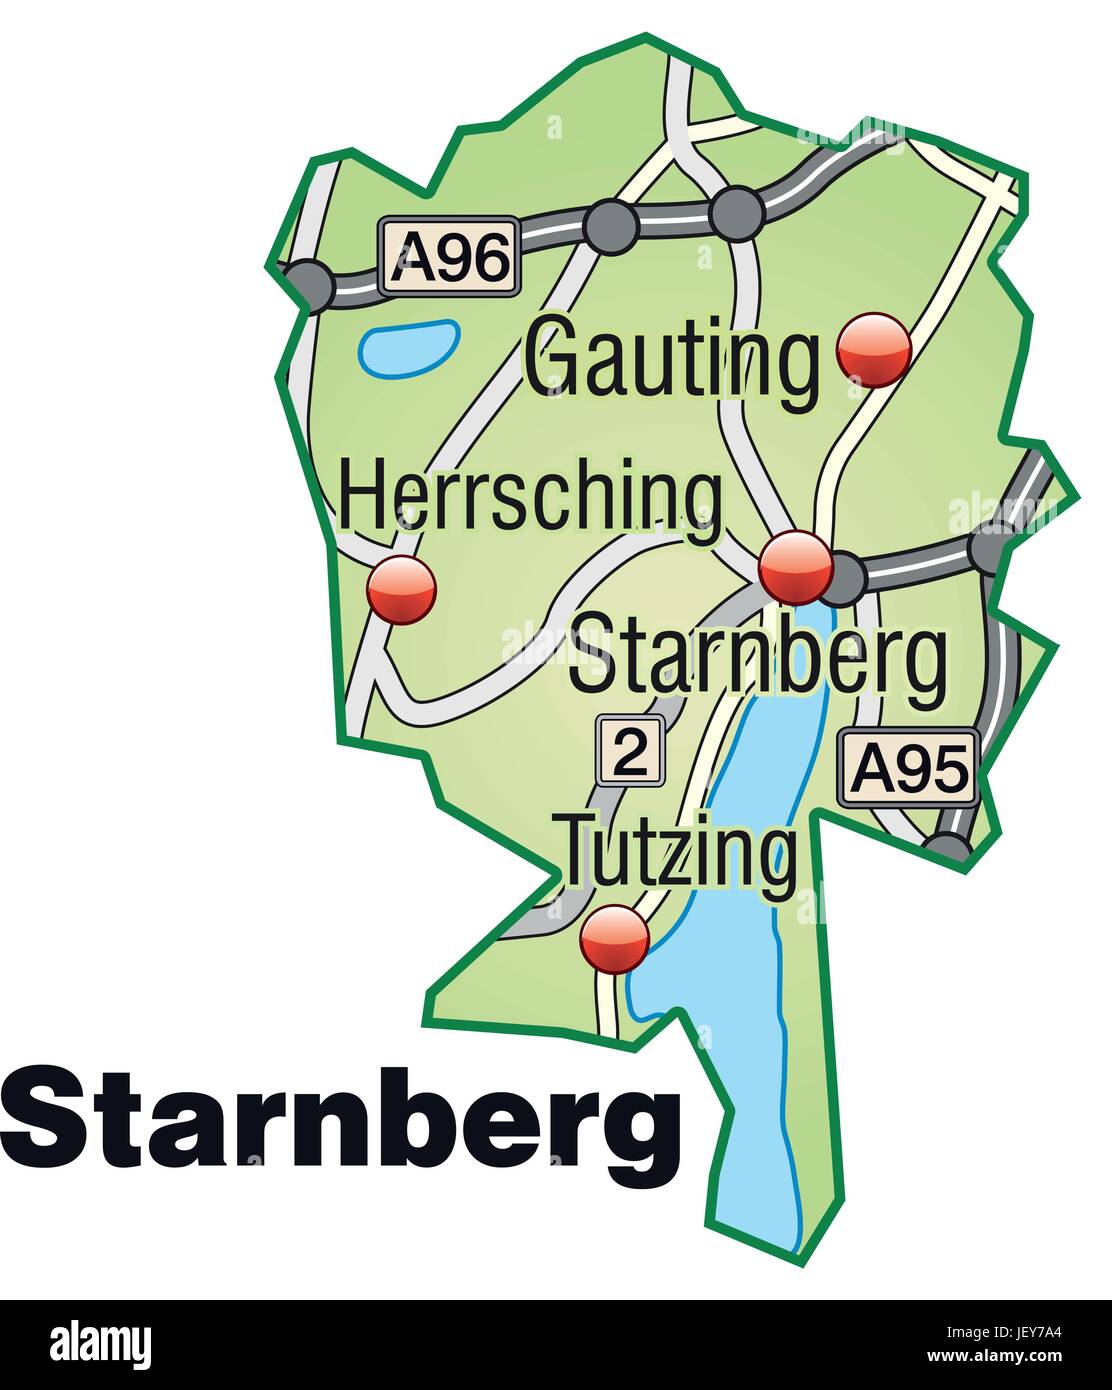 Site de réseau de transport à Starnberg vert pastel Illustration de Vecteur